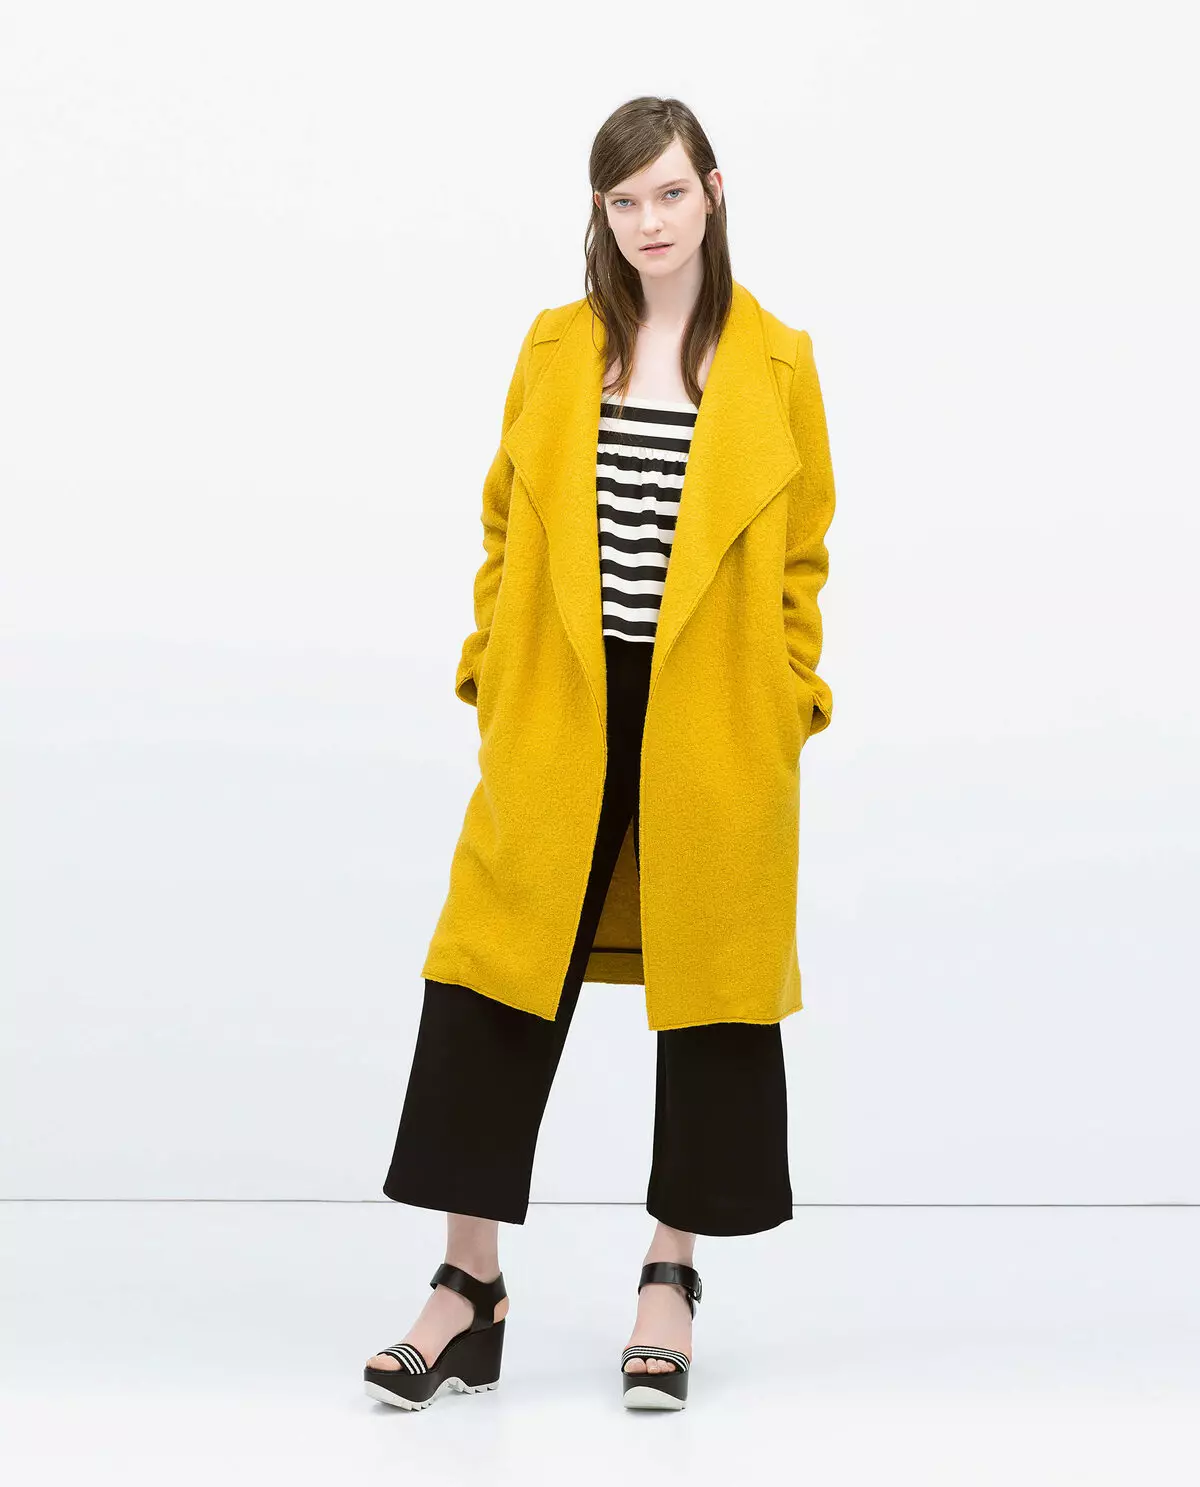 Sárga kabát 2021 (123 fotók): Mit kell viselni, milyen sálat illeszkedik, divatos kabát, táska sárga kabát, kiegészítők, világos sárga 536_29